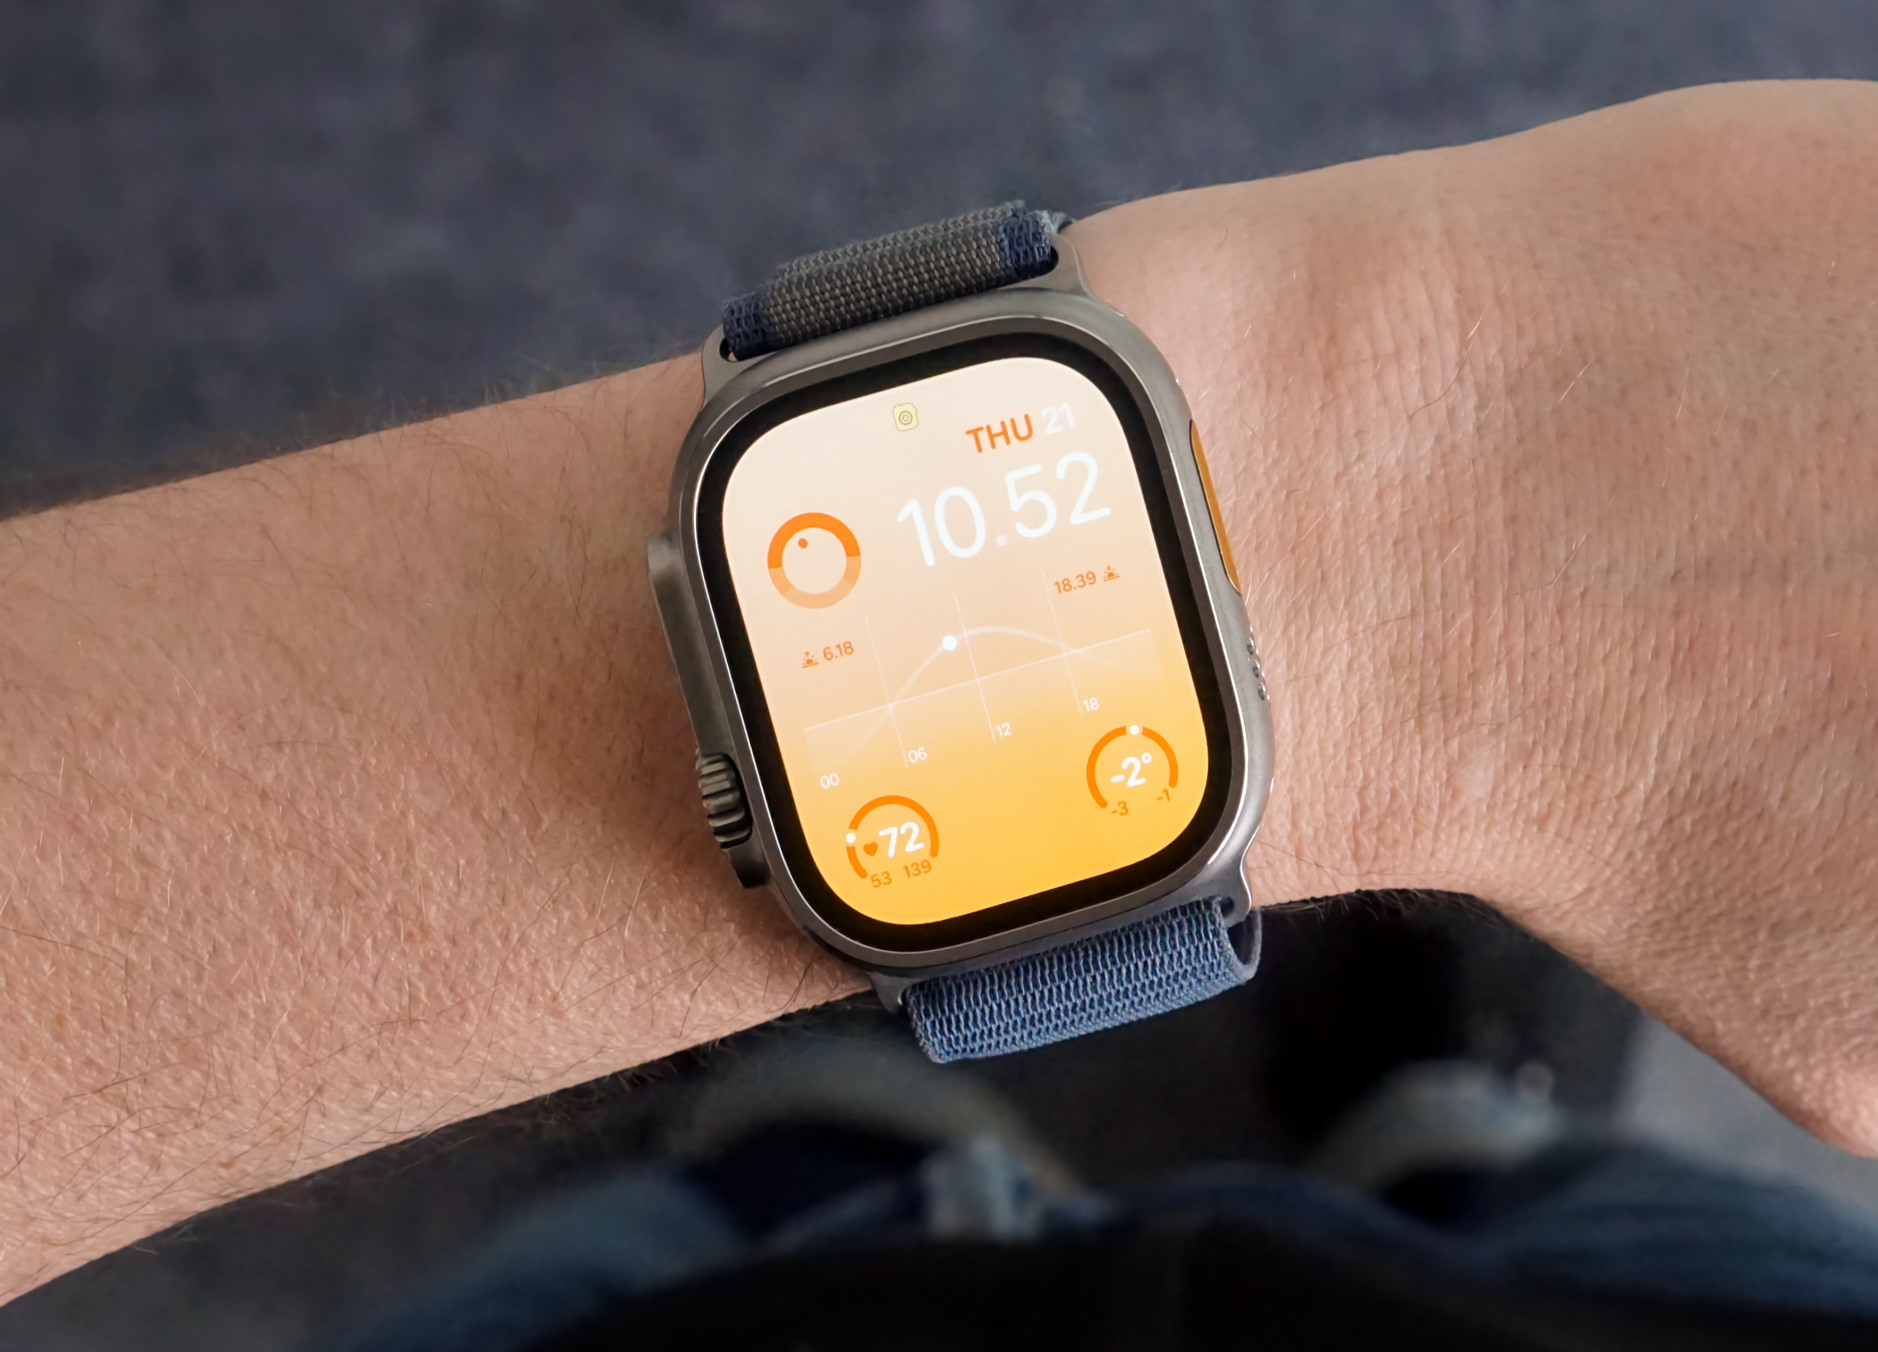 Auf dem Bild ist eine Apple Watch an einem Handgelenk zu sehen. Das Zifferblatt zeigt die Uhrzeit, das Datum, Schritte, die Herzfrequenz und das Wetter.